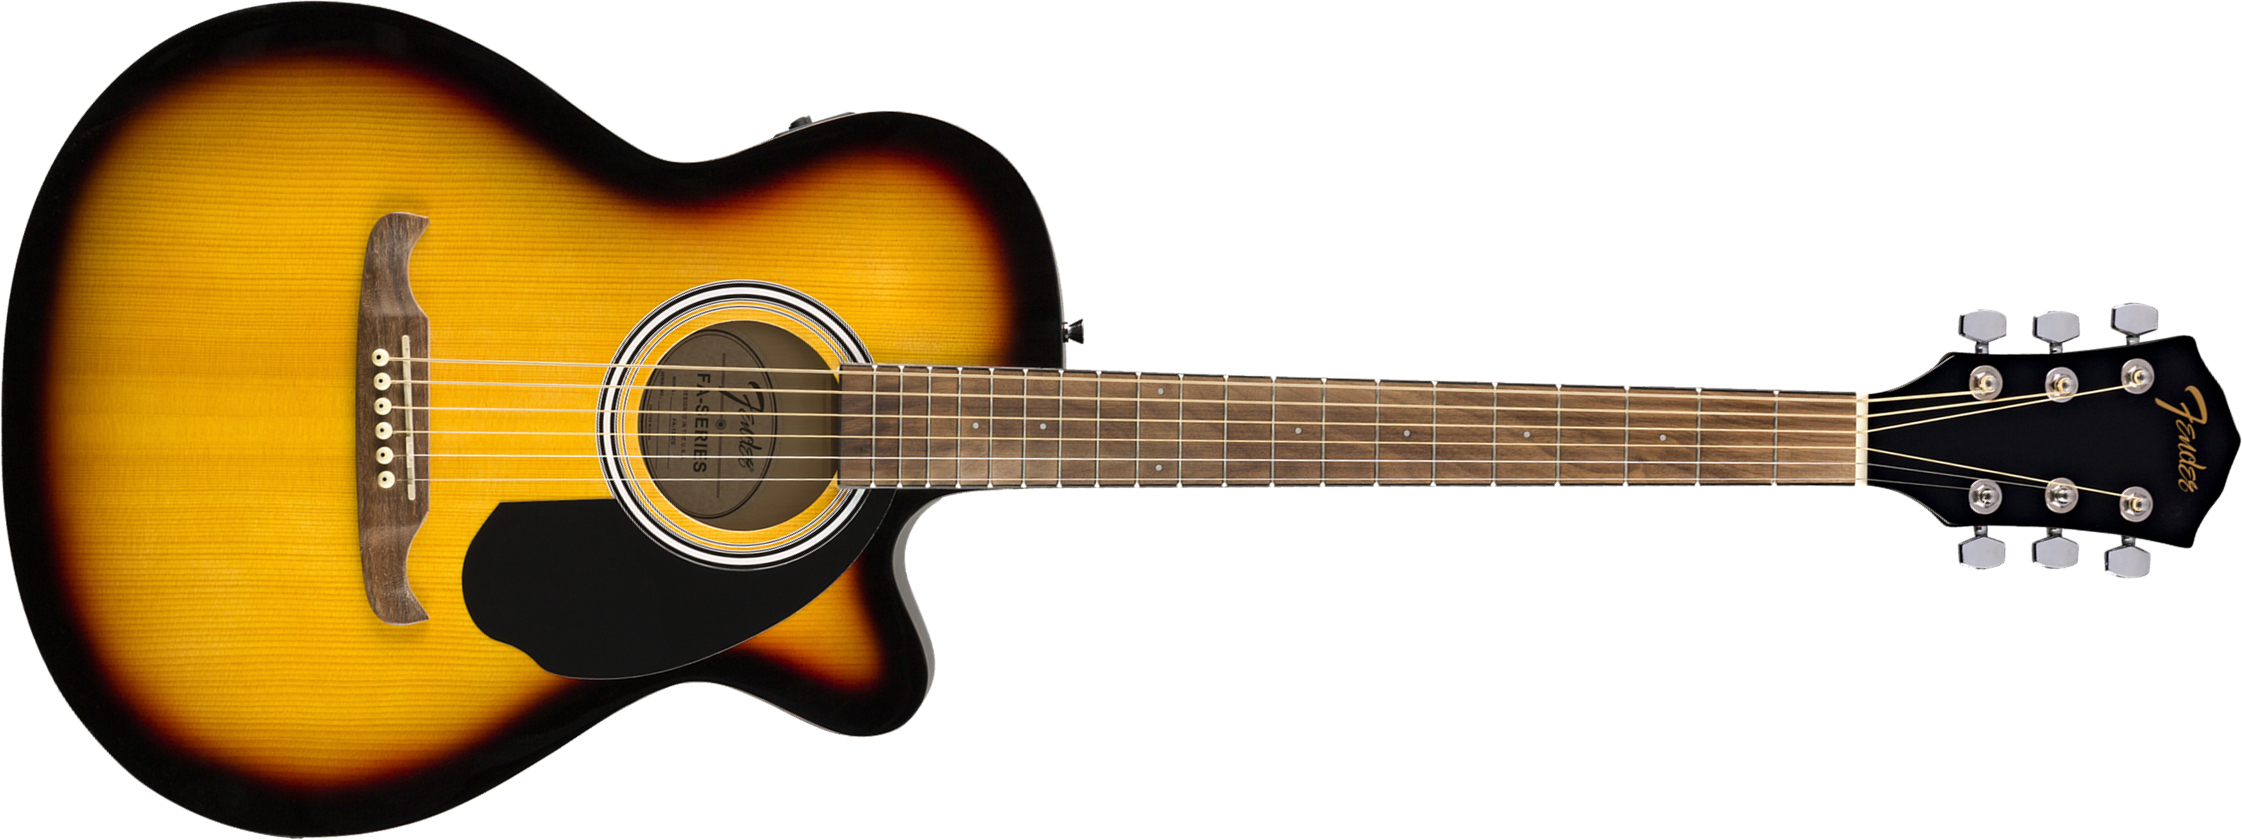 Fender Fa-135ce Concert Cw Epicea Tilleul Wal - Sunburst - Guitarra electro acustica - Main picture